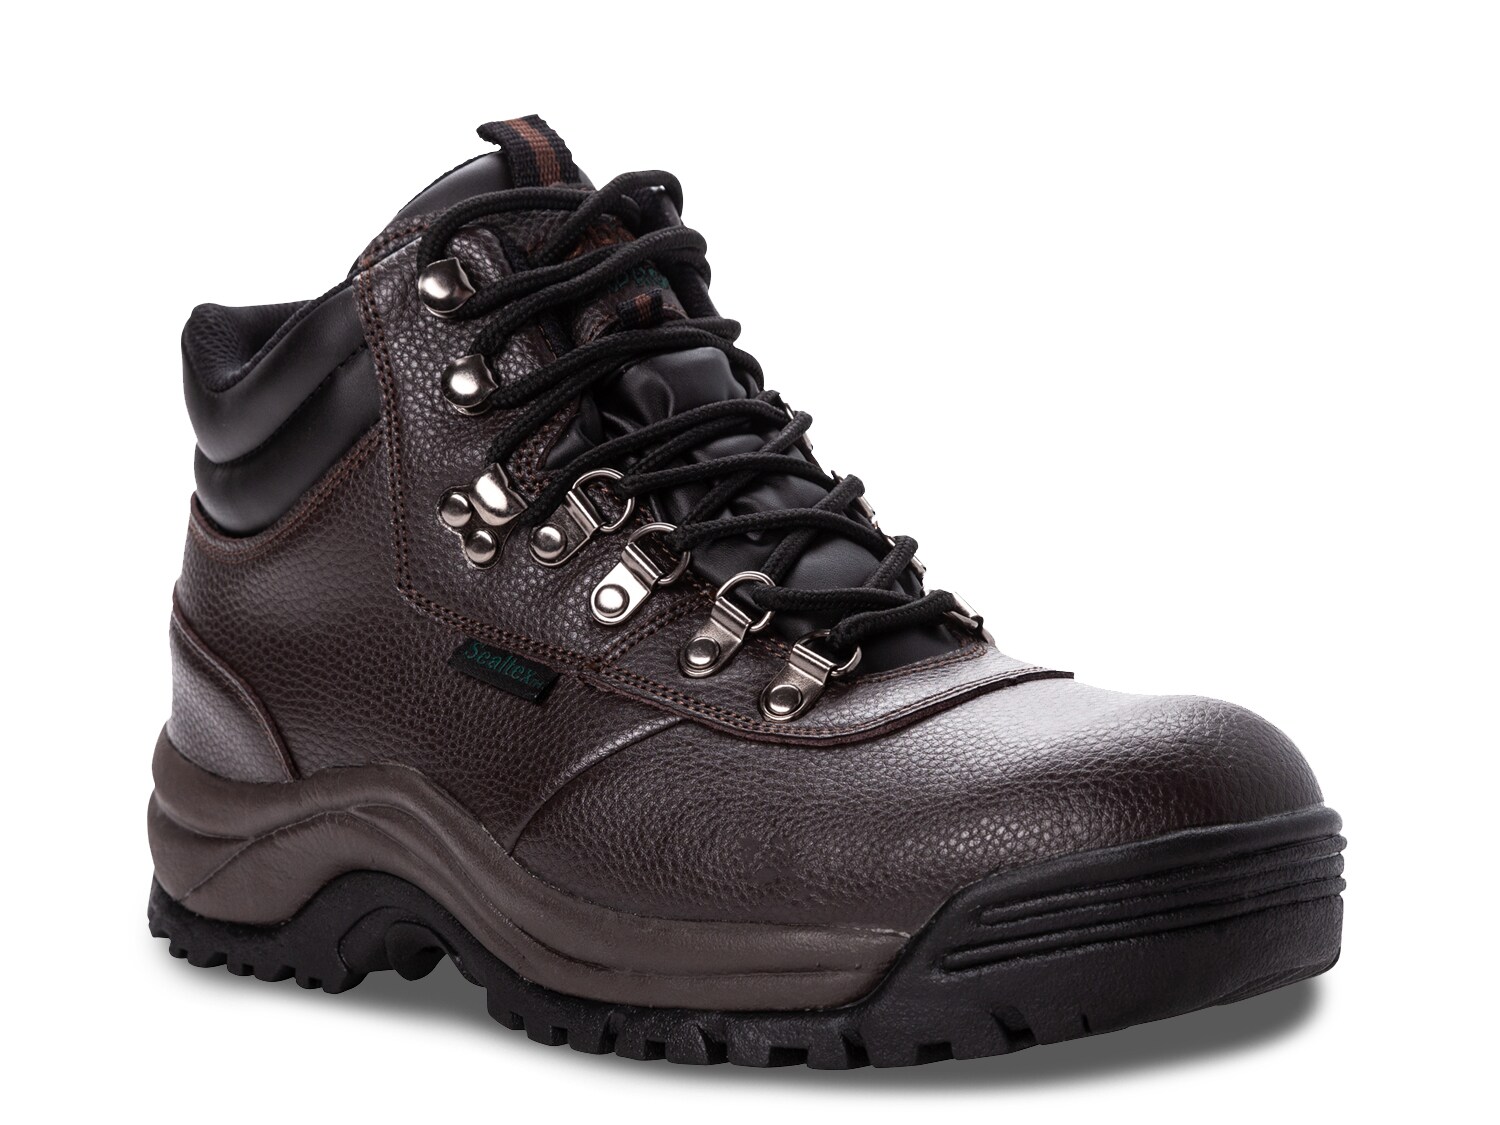 Ботинки Propet Shield Walker мужские походные водонепроницаемые, темно-коричневый